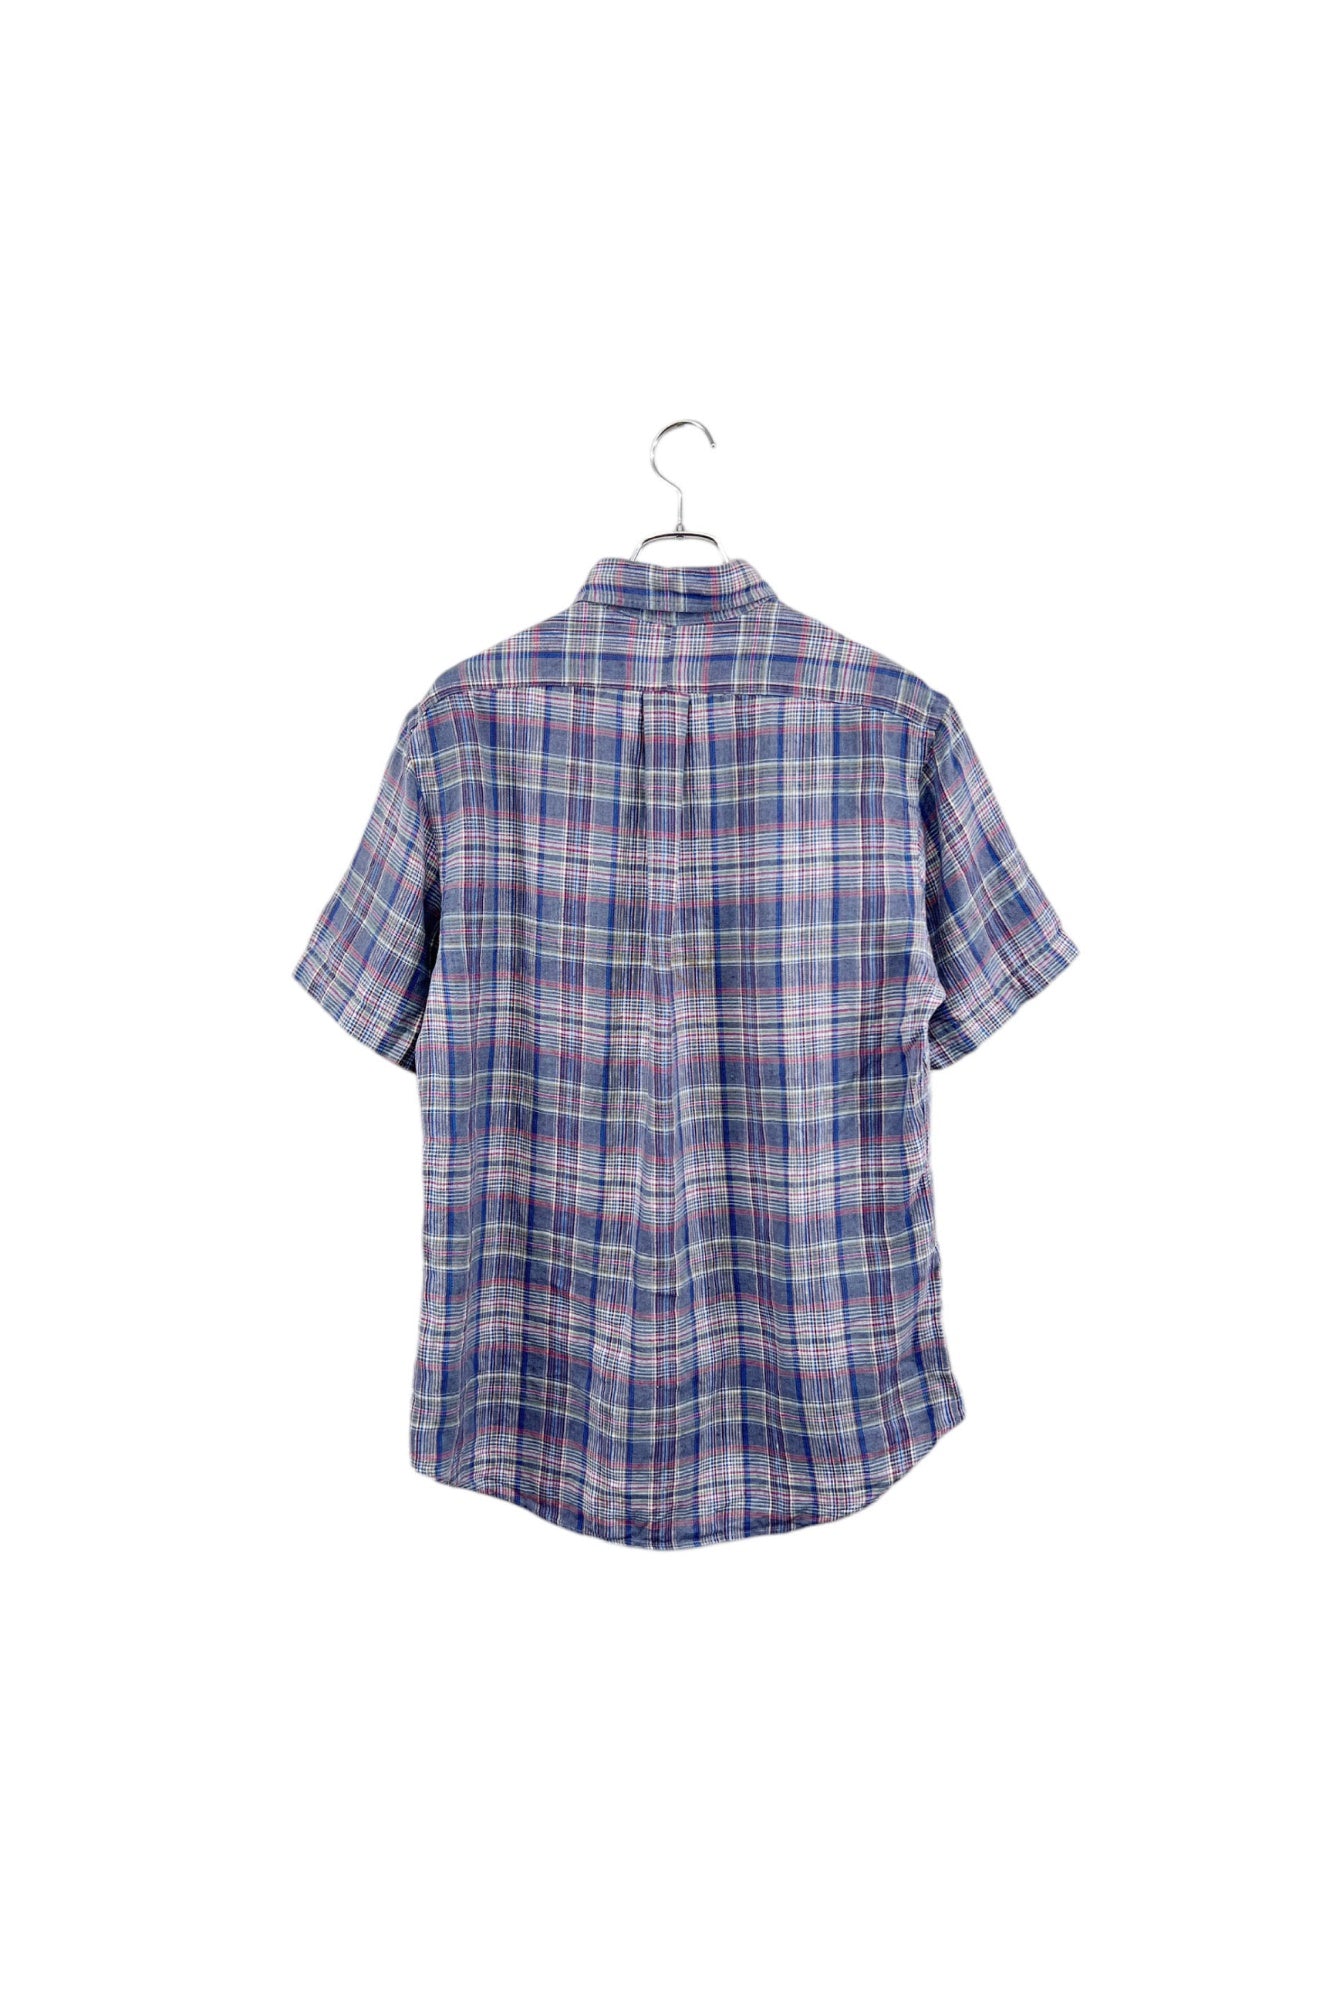 90s Ralph Lauren linen check shirt